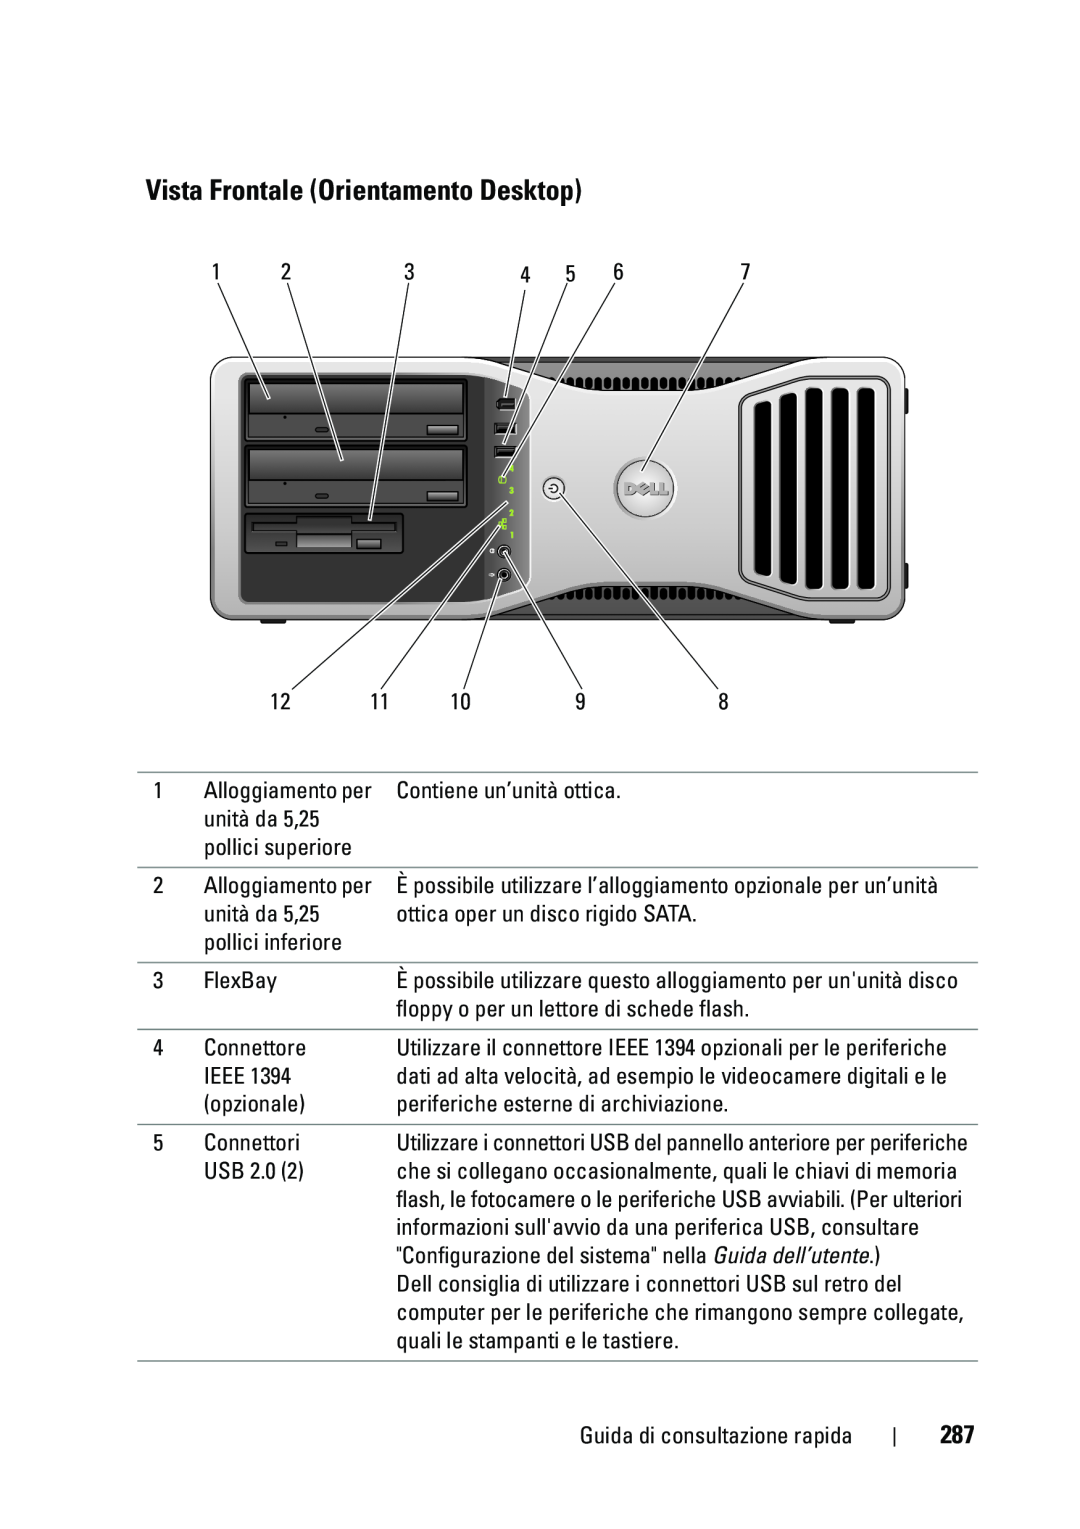 Dell T5400 manual Vista Frontale Orientamento Desktop, Utilizzare i connettori USB del pannello anteriore per periferiche 